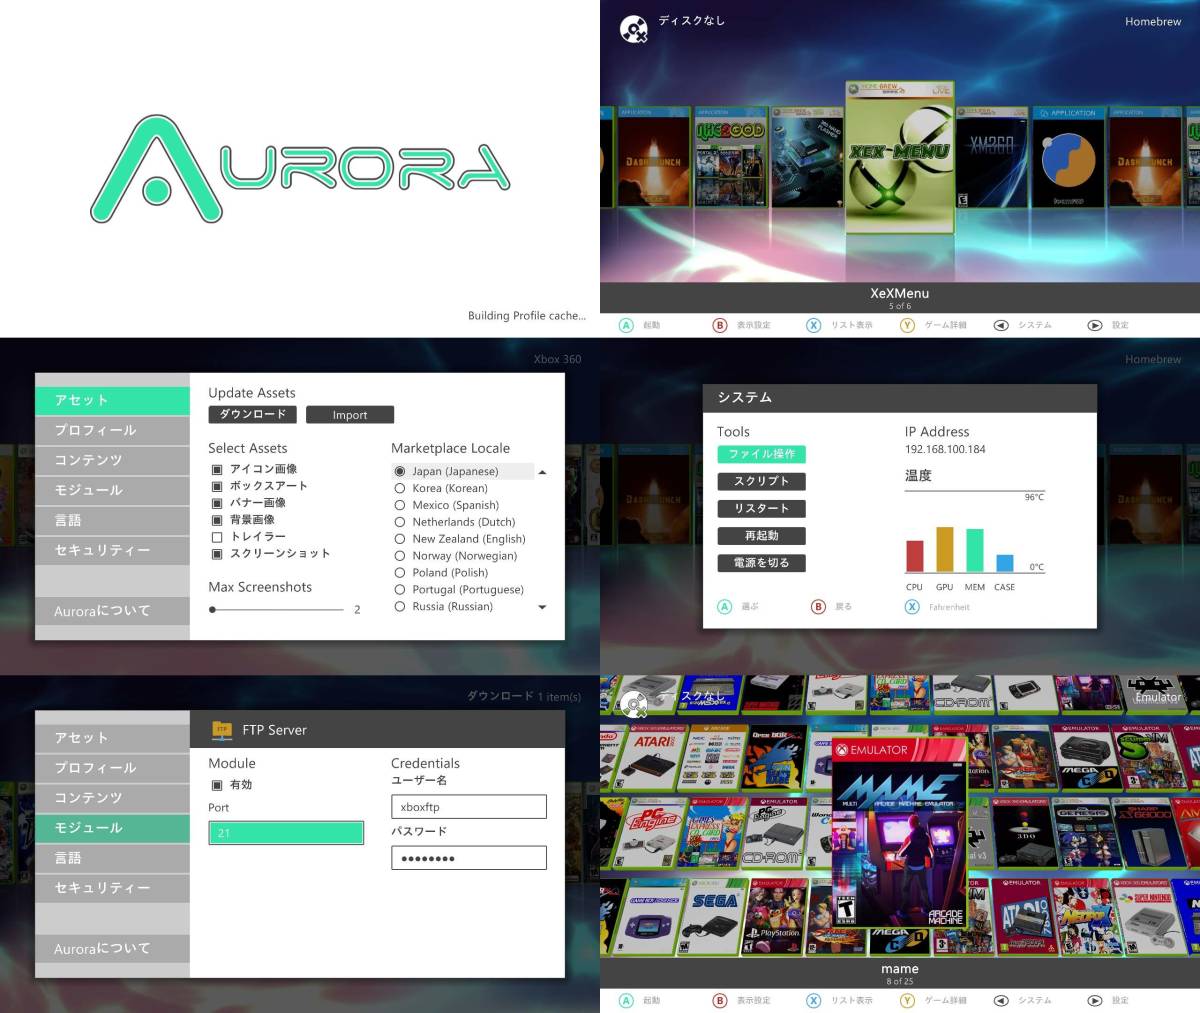 Xbox360 1TB HDD RGH 付属品付 動作OK 日本語化 (Jasper) [N905]_Auroraが起動します